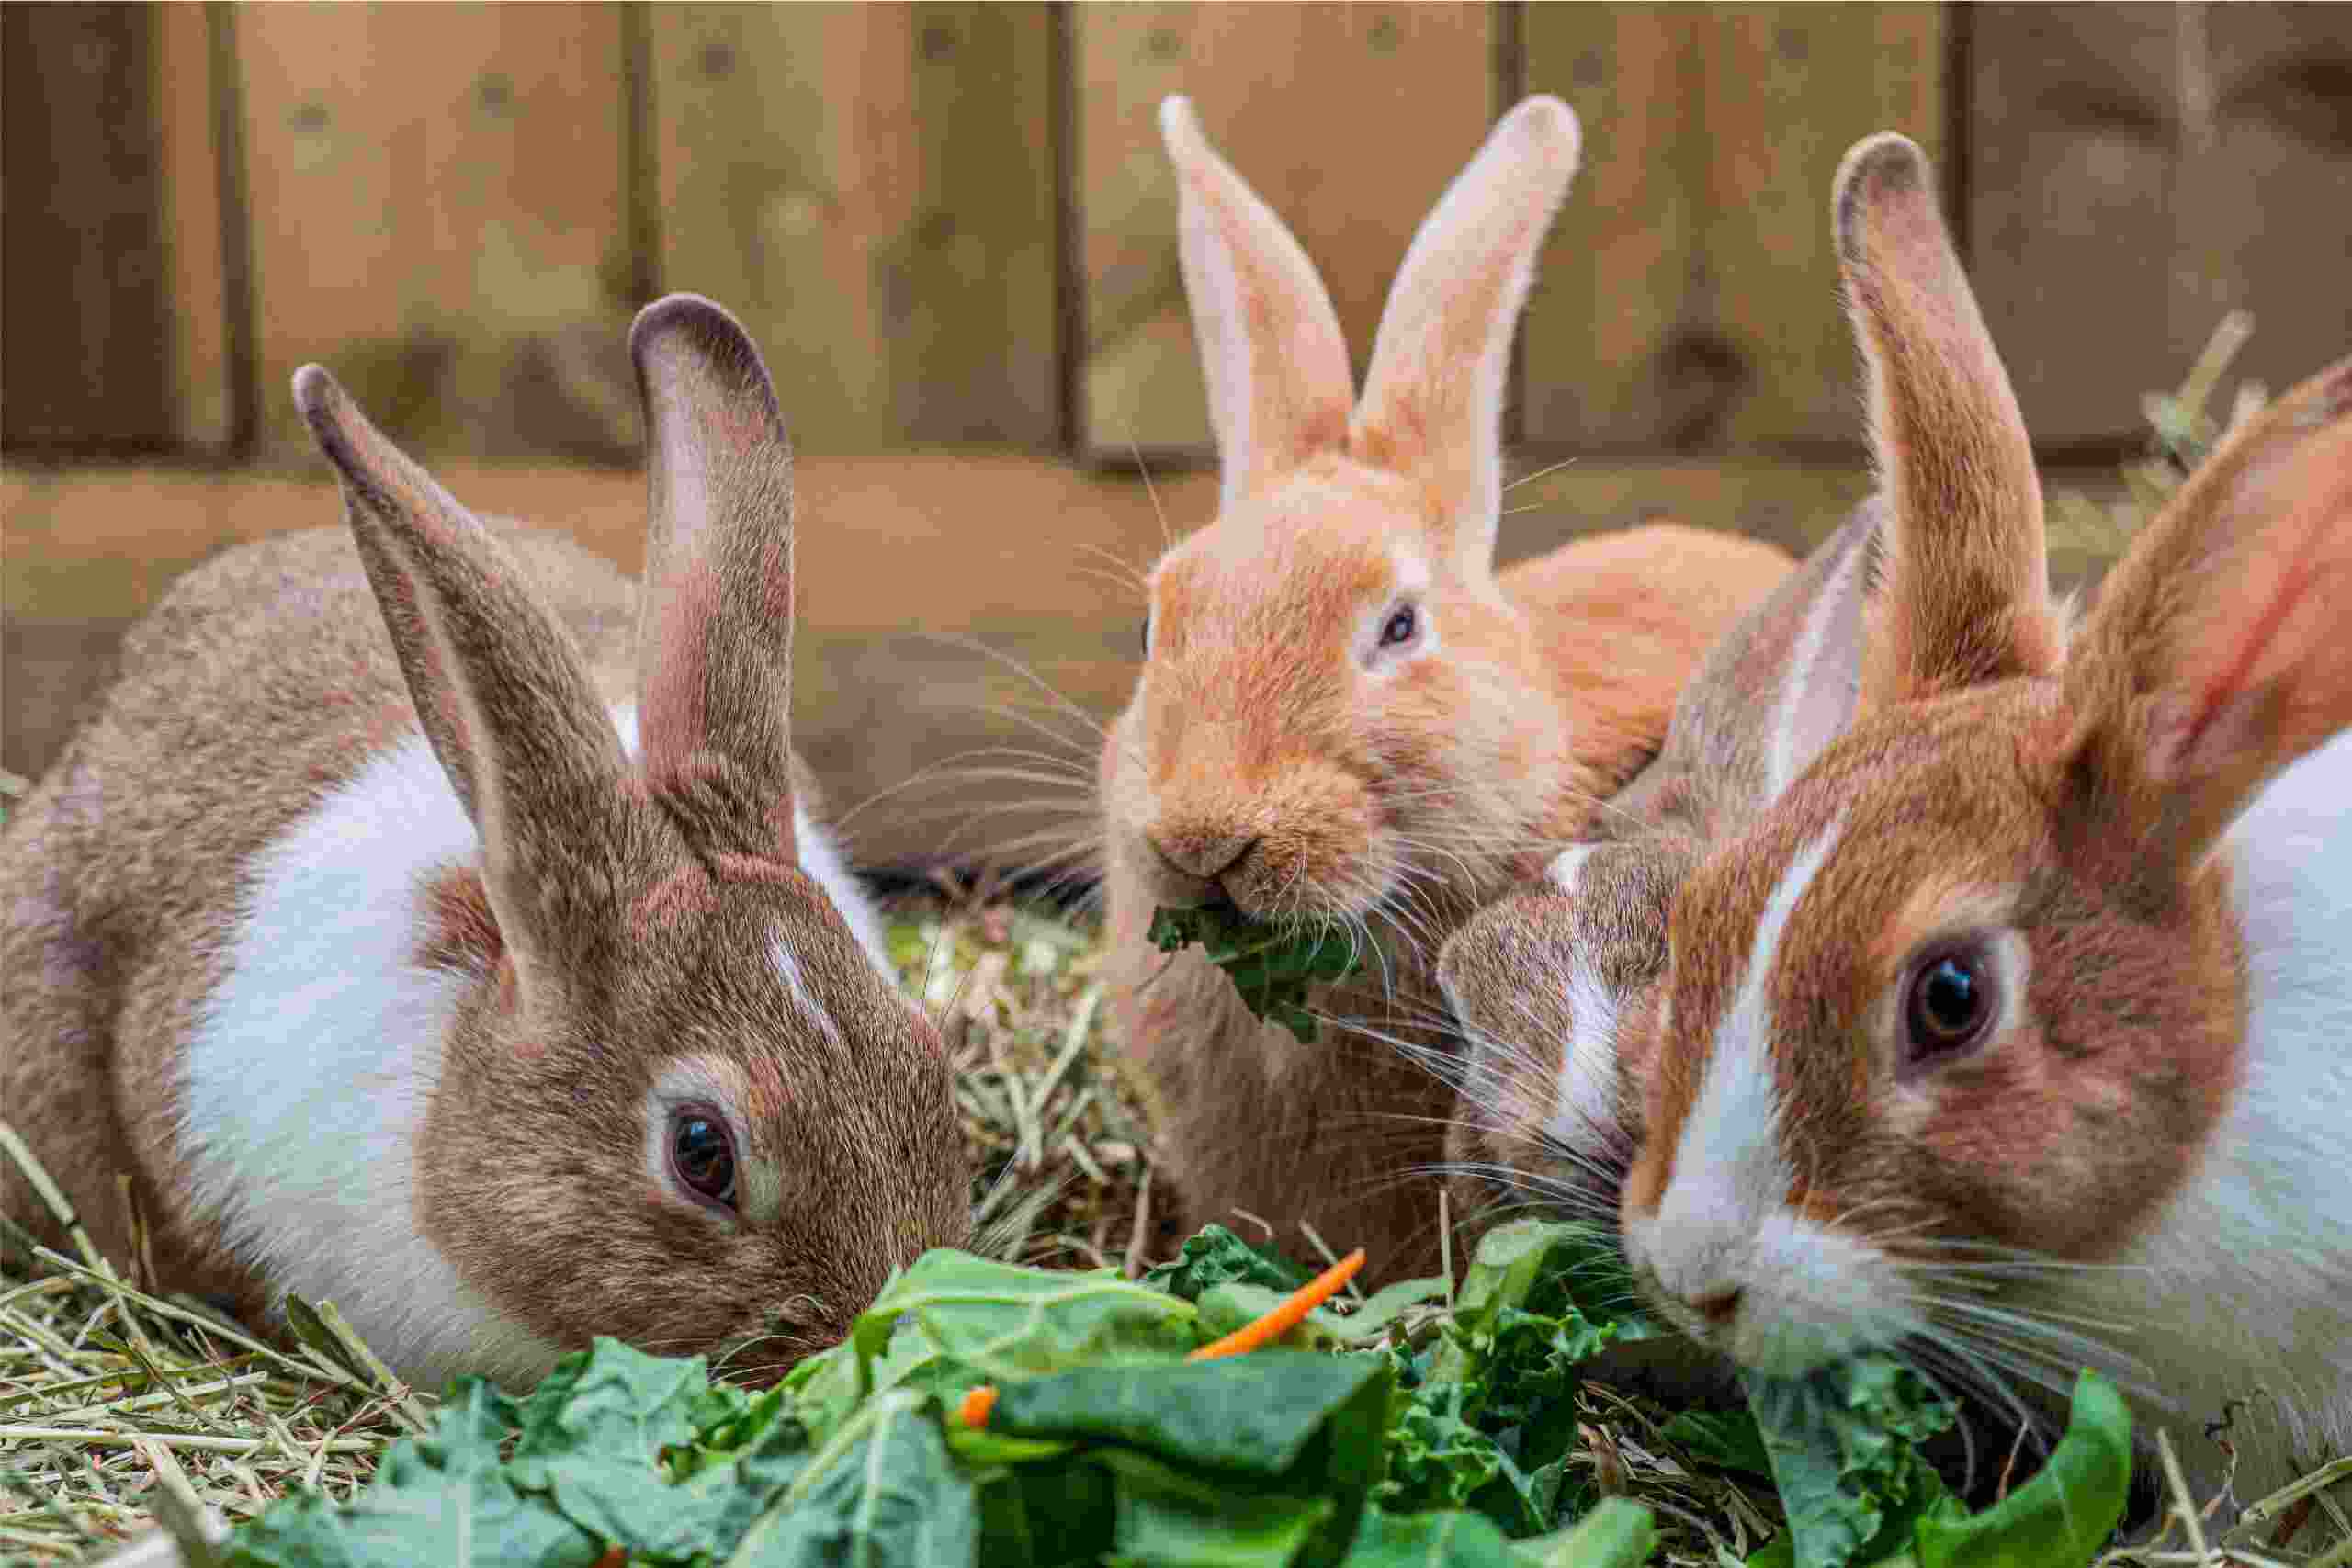 Jenis kelinci pedaging biasanya mempunyai tubuh yang lebih besar dan gempal dibandingkan kelinci hias